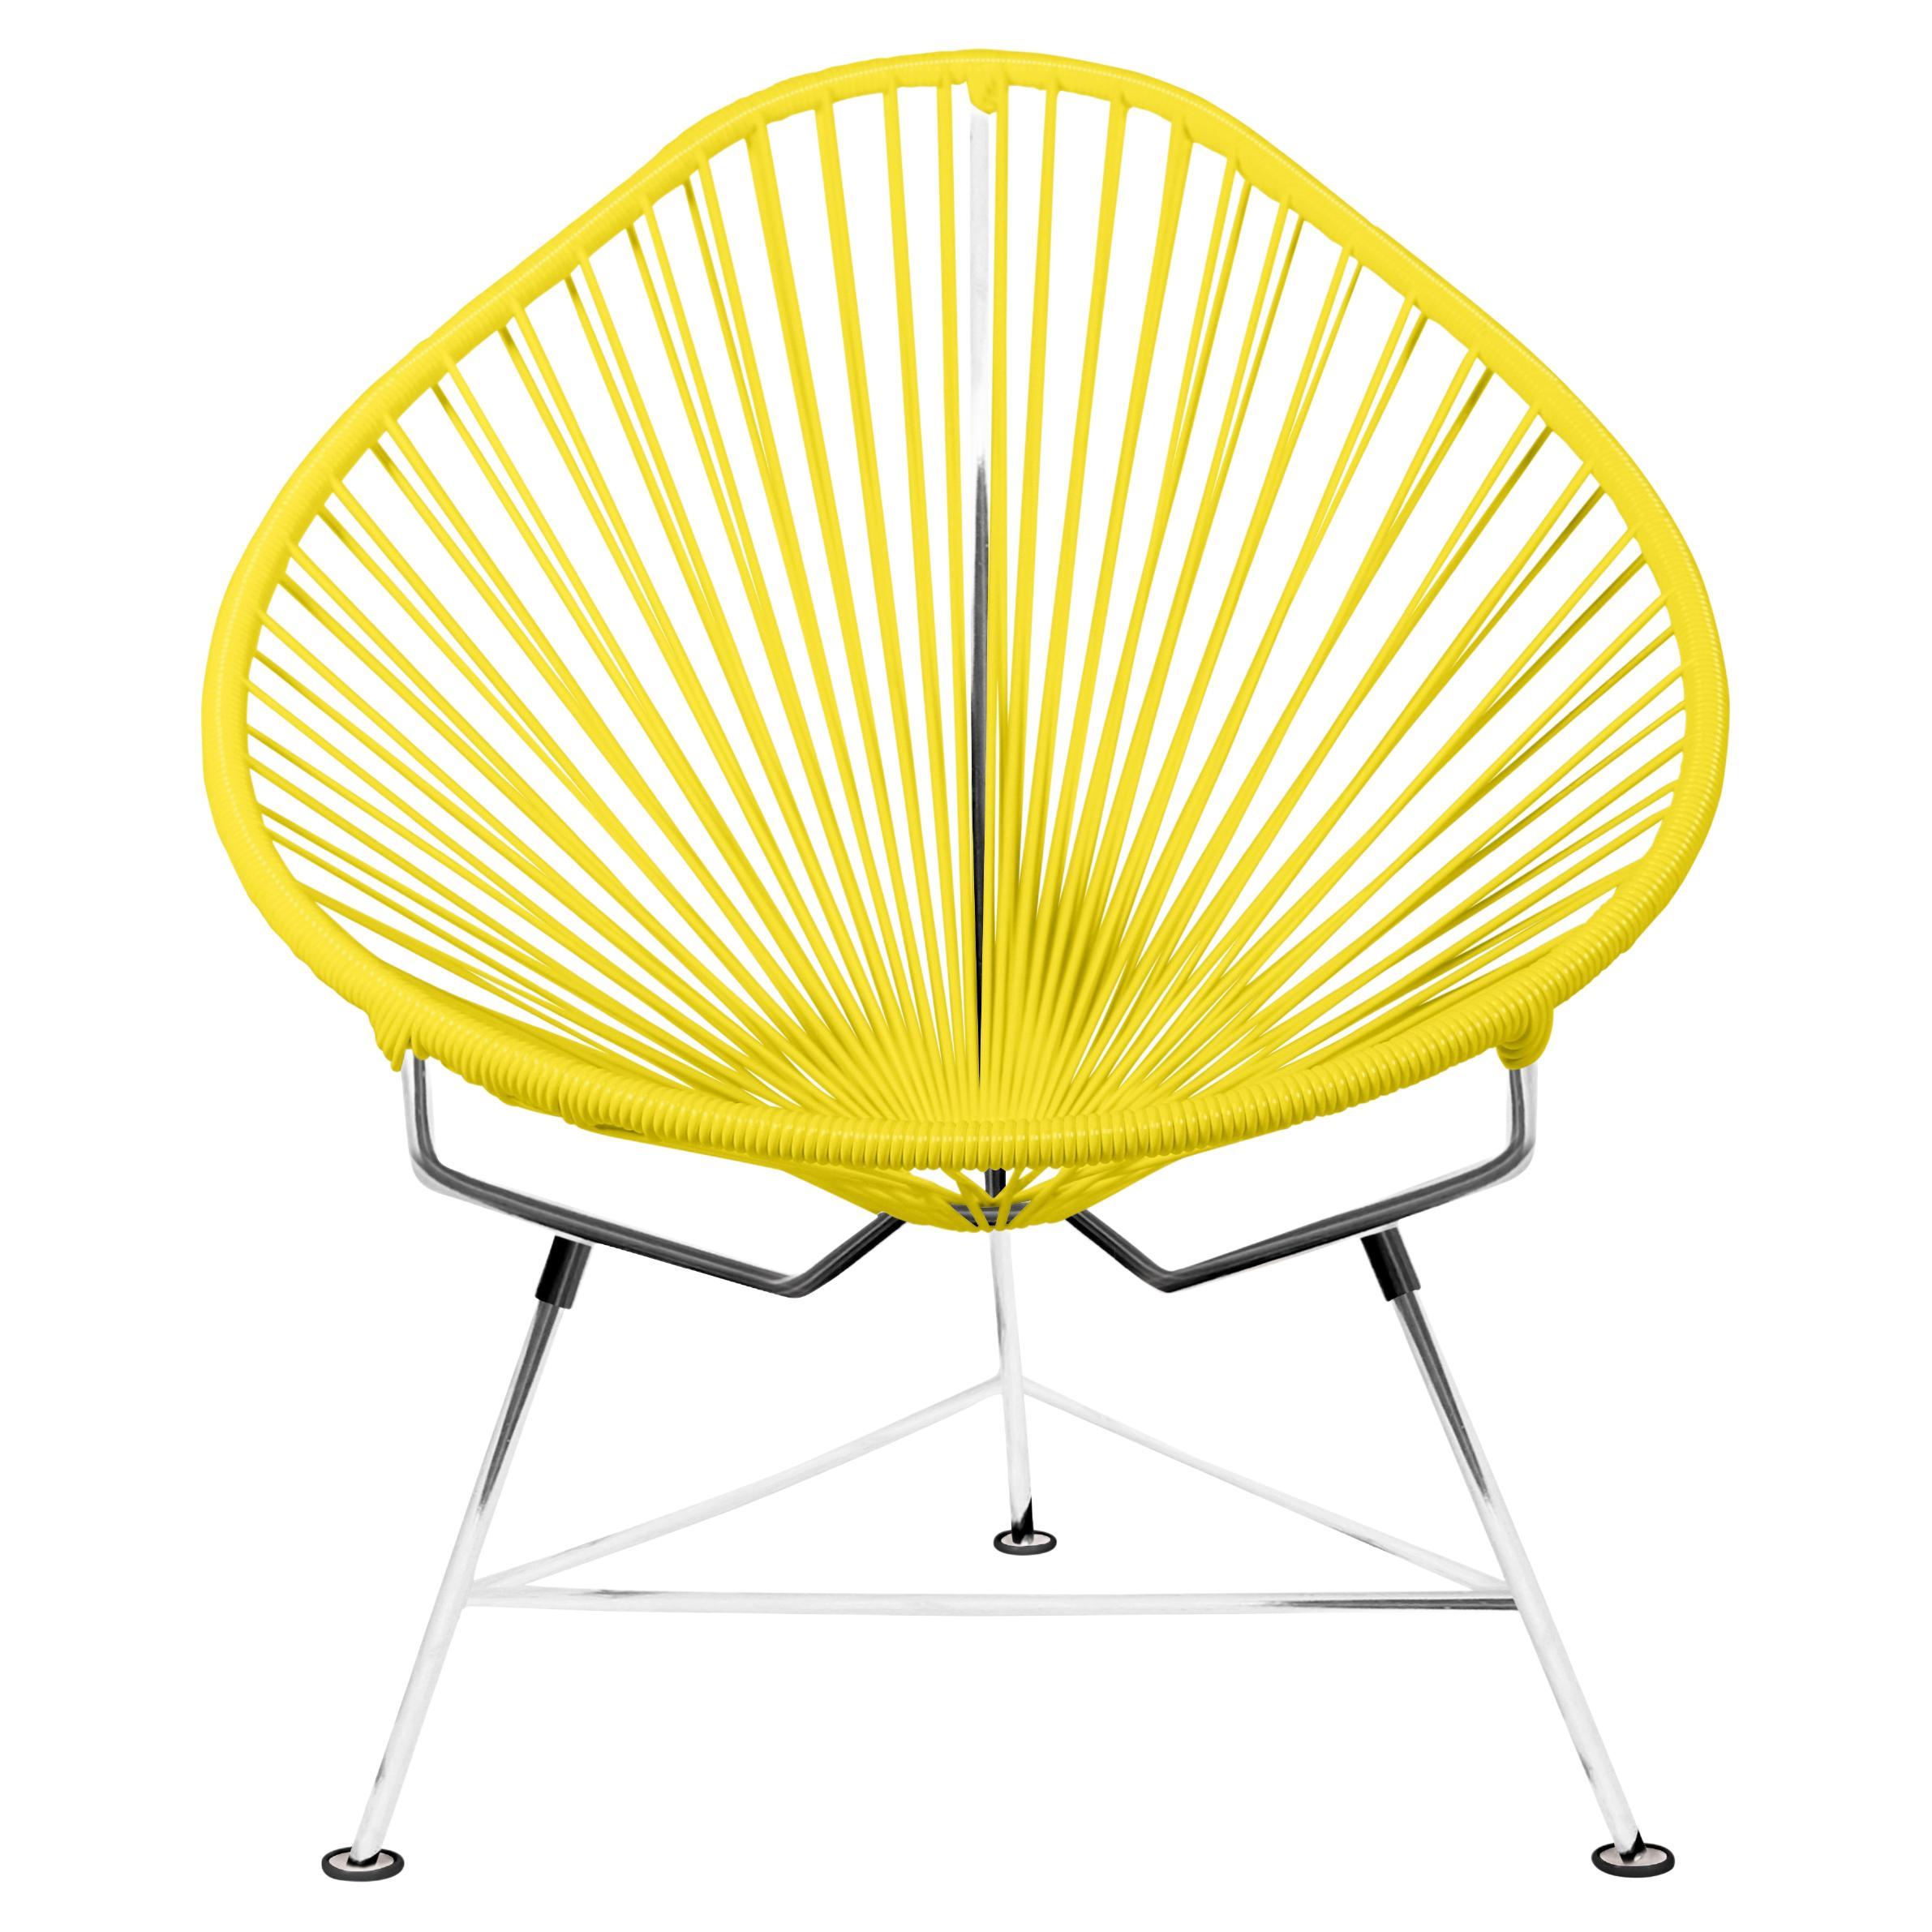 Innit Designs chaise Acapulco tissée en jaune sur cadre chromé